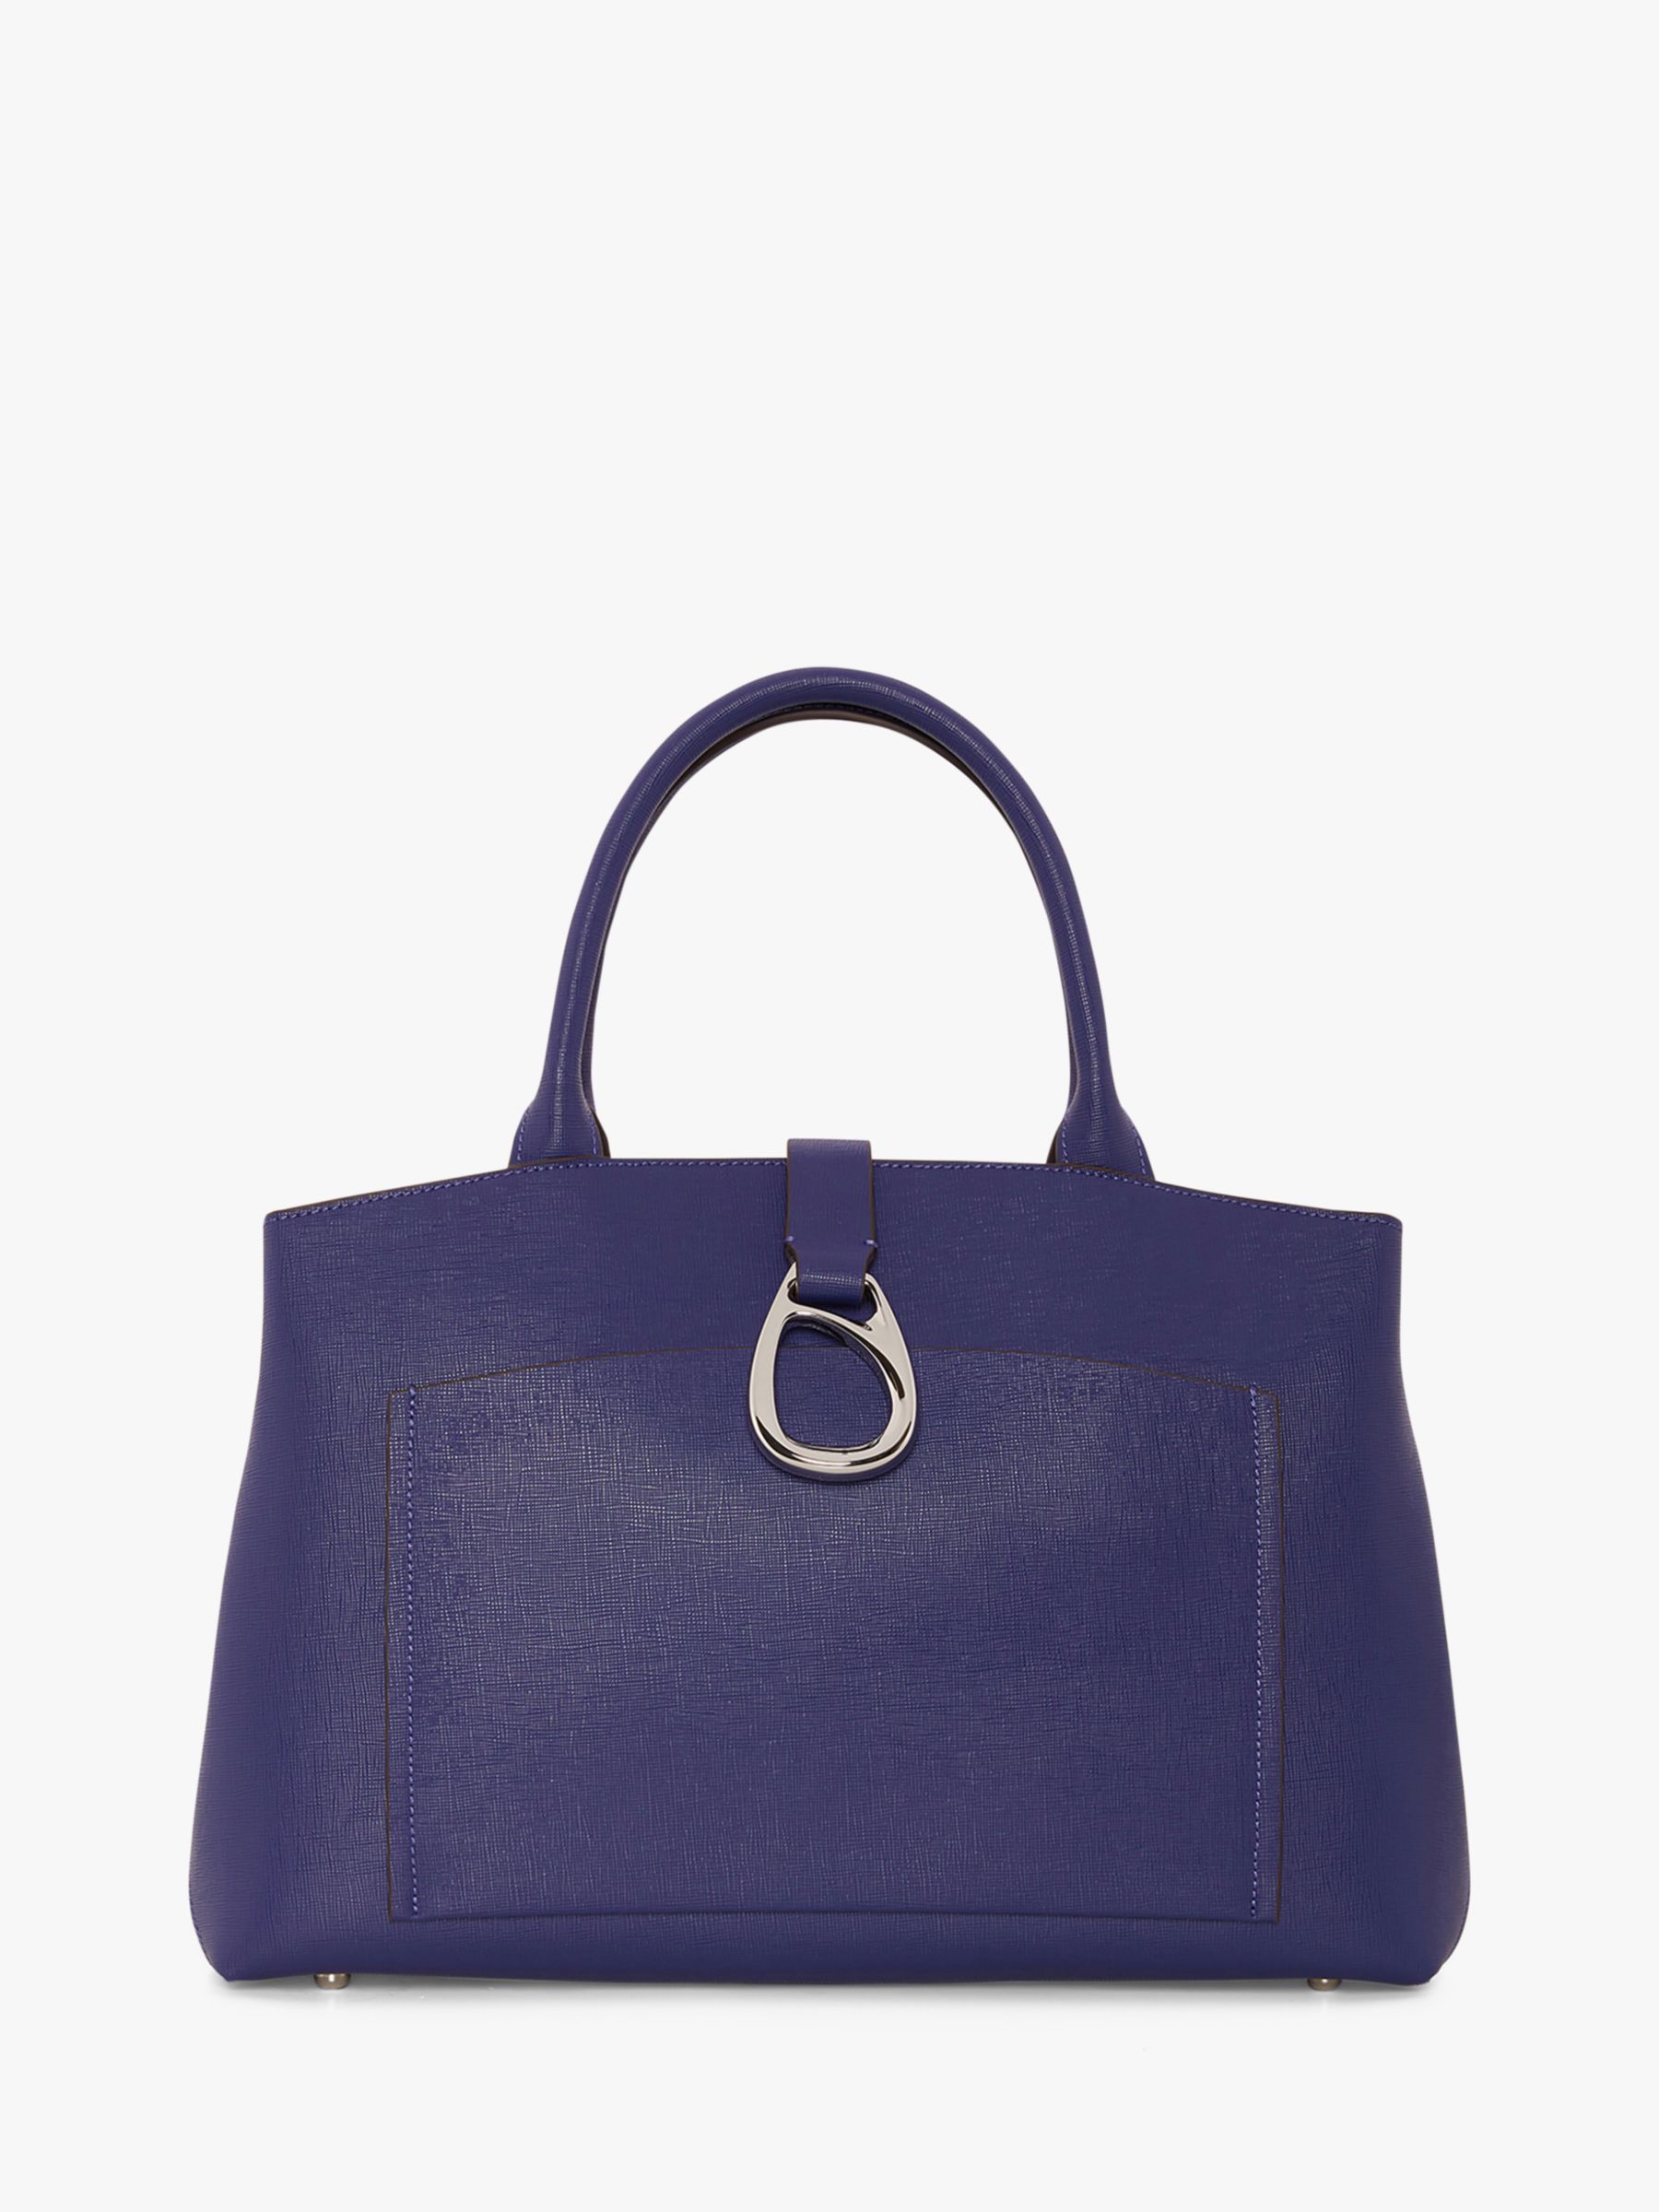 Handbags, Bags & Purses - Jasper Conran London, Blue